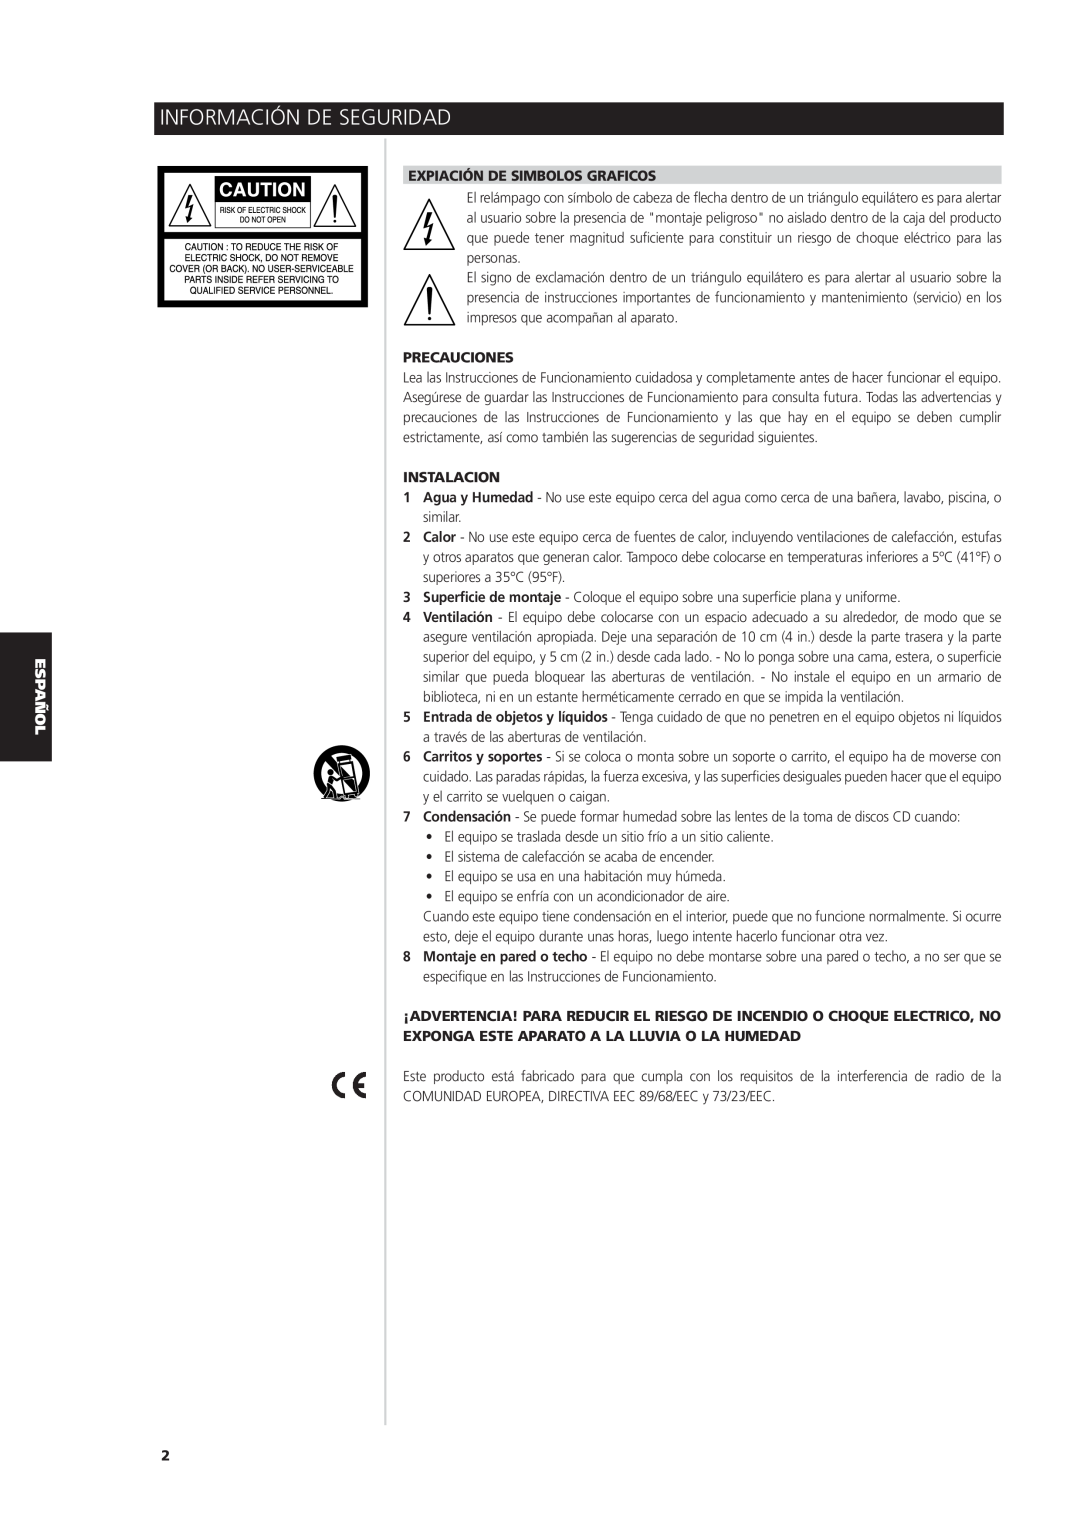 NAD S170iAV owner manual Información De Seguridad, Expiación De Simbolos Graficos, Precauciones, Instalacion 